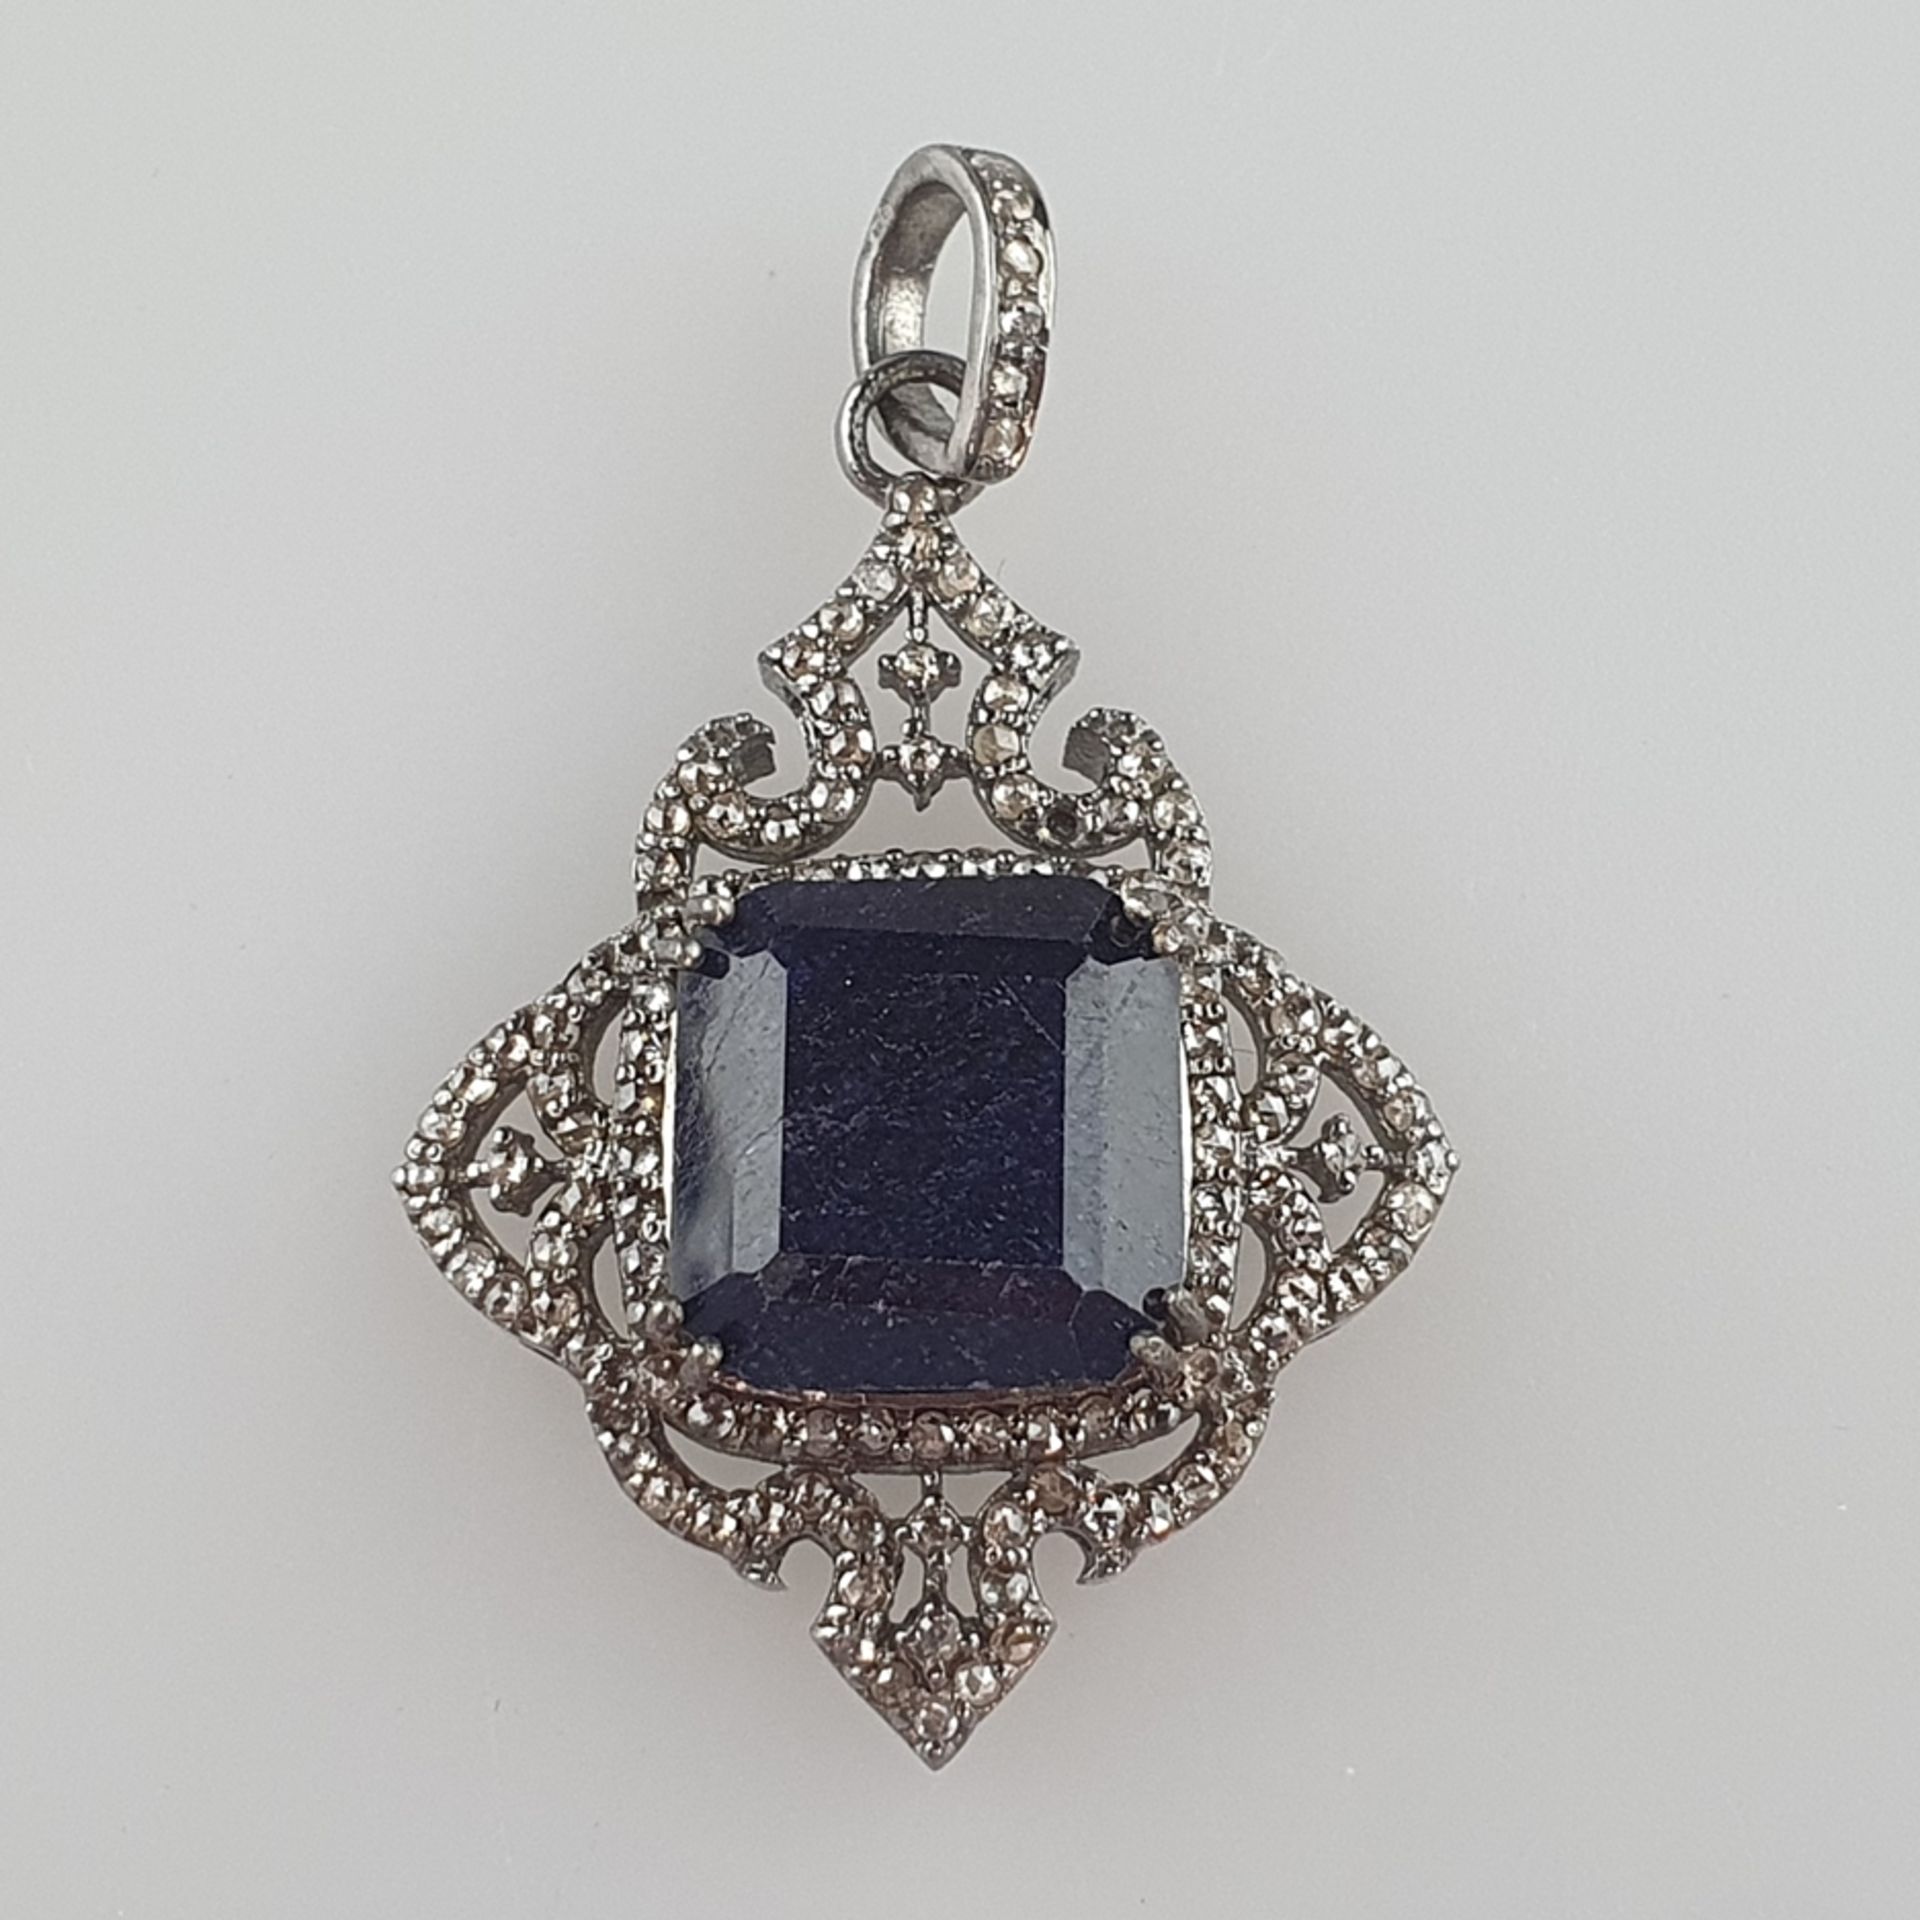 Saphiranhänger mit Diamanten - Sterling Silber 925/000, Besatz mit 1 facettiertem Saphir von ca. 18